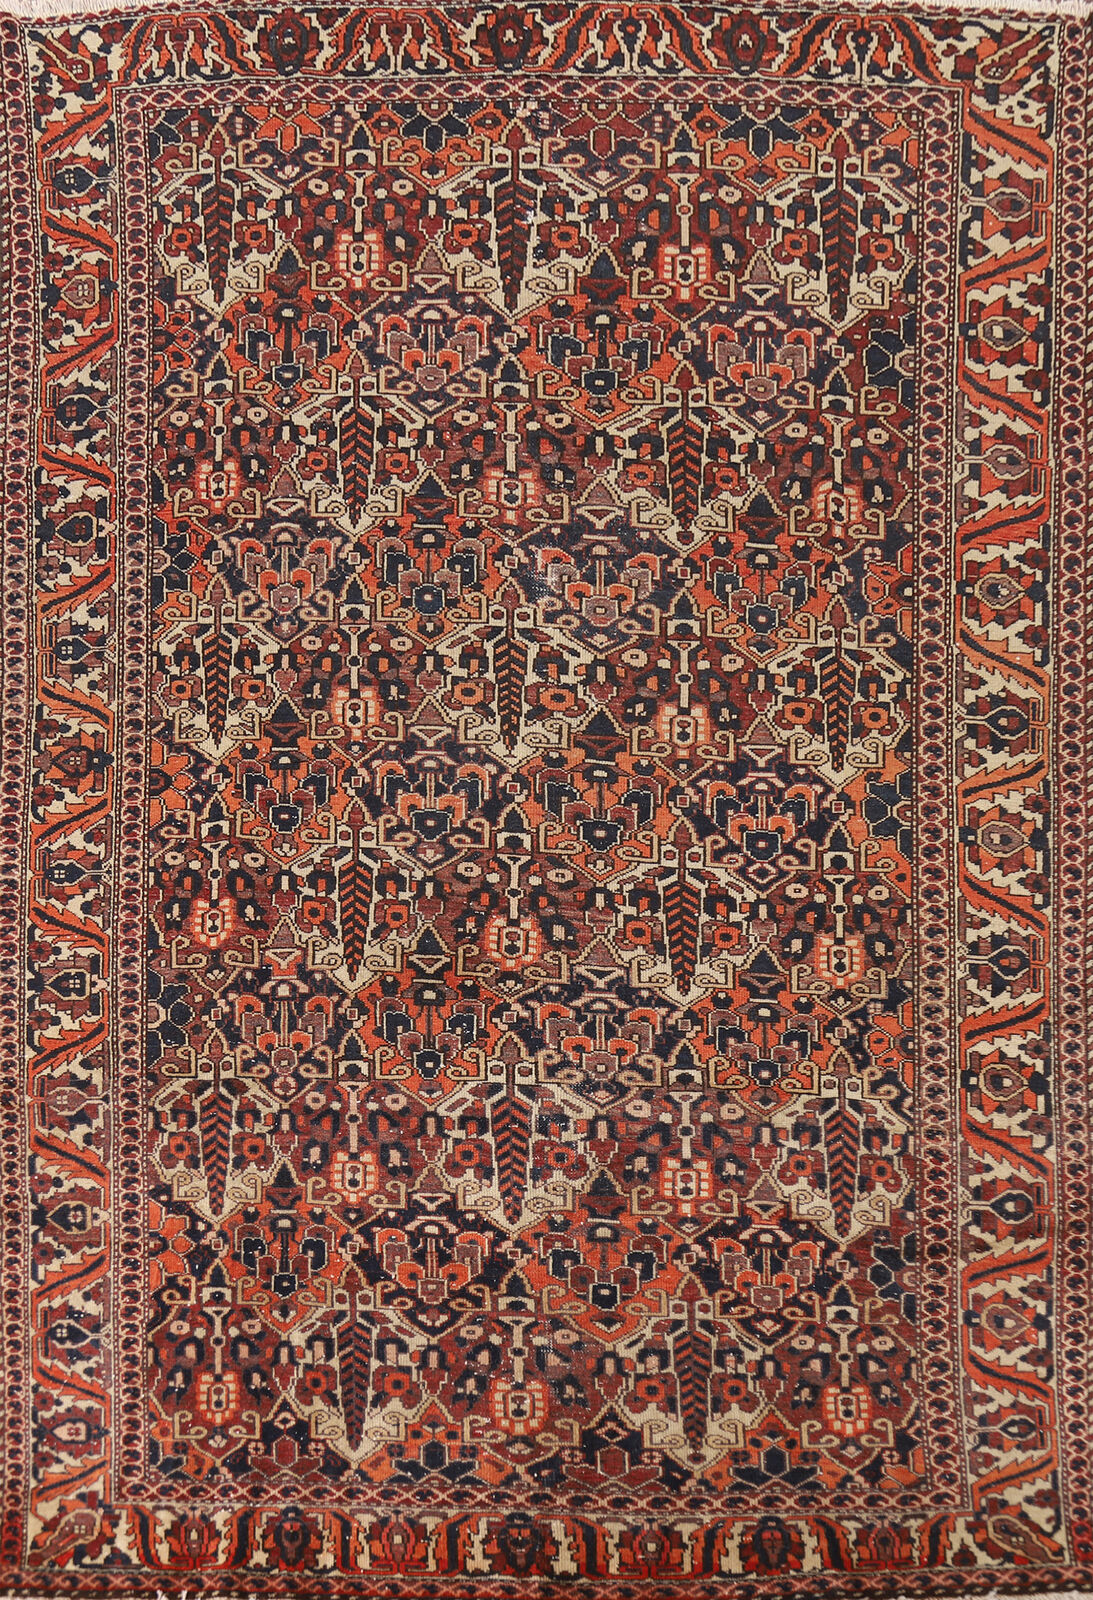 Vintage Tribal Wool Bakhtiari Area Rug 7x10 Geometric Hand-made Nomad Carpet